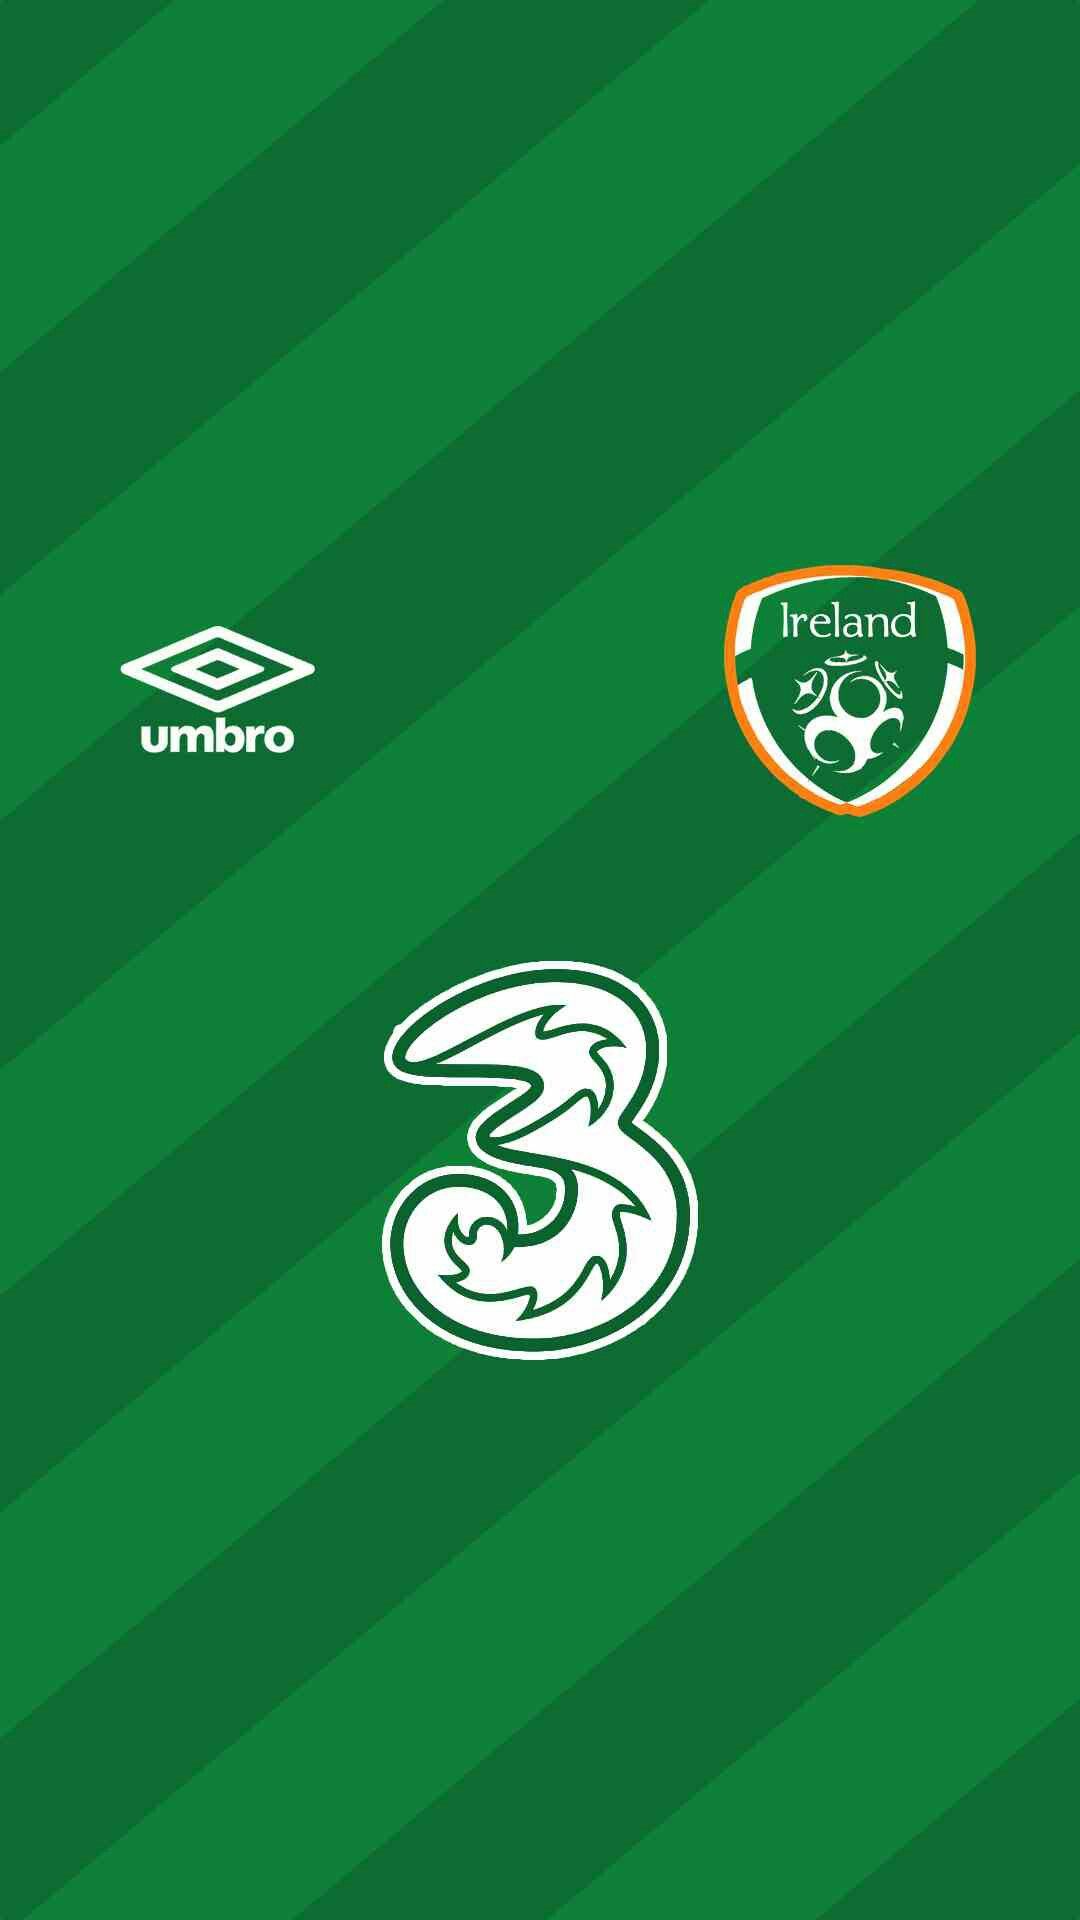 Republic of Ireland wallpaper. Football wallpaper, Umbro, Negara